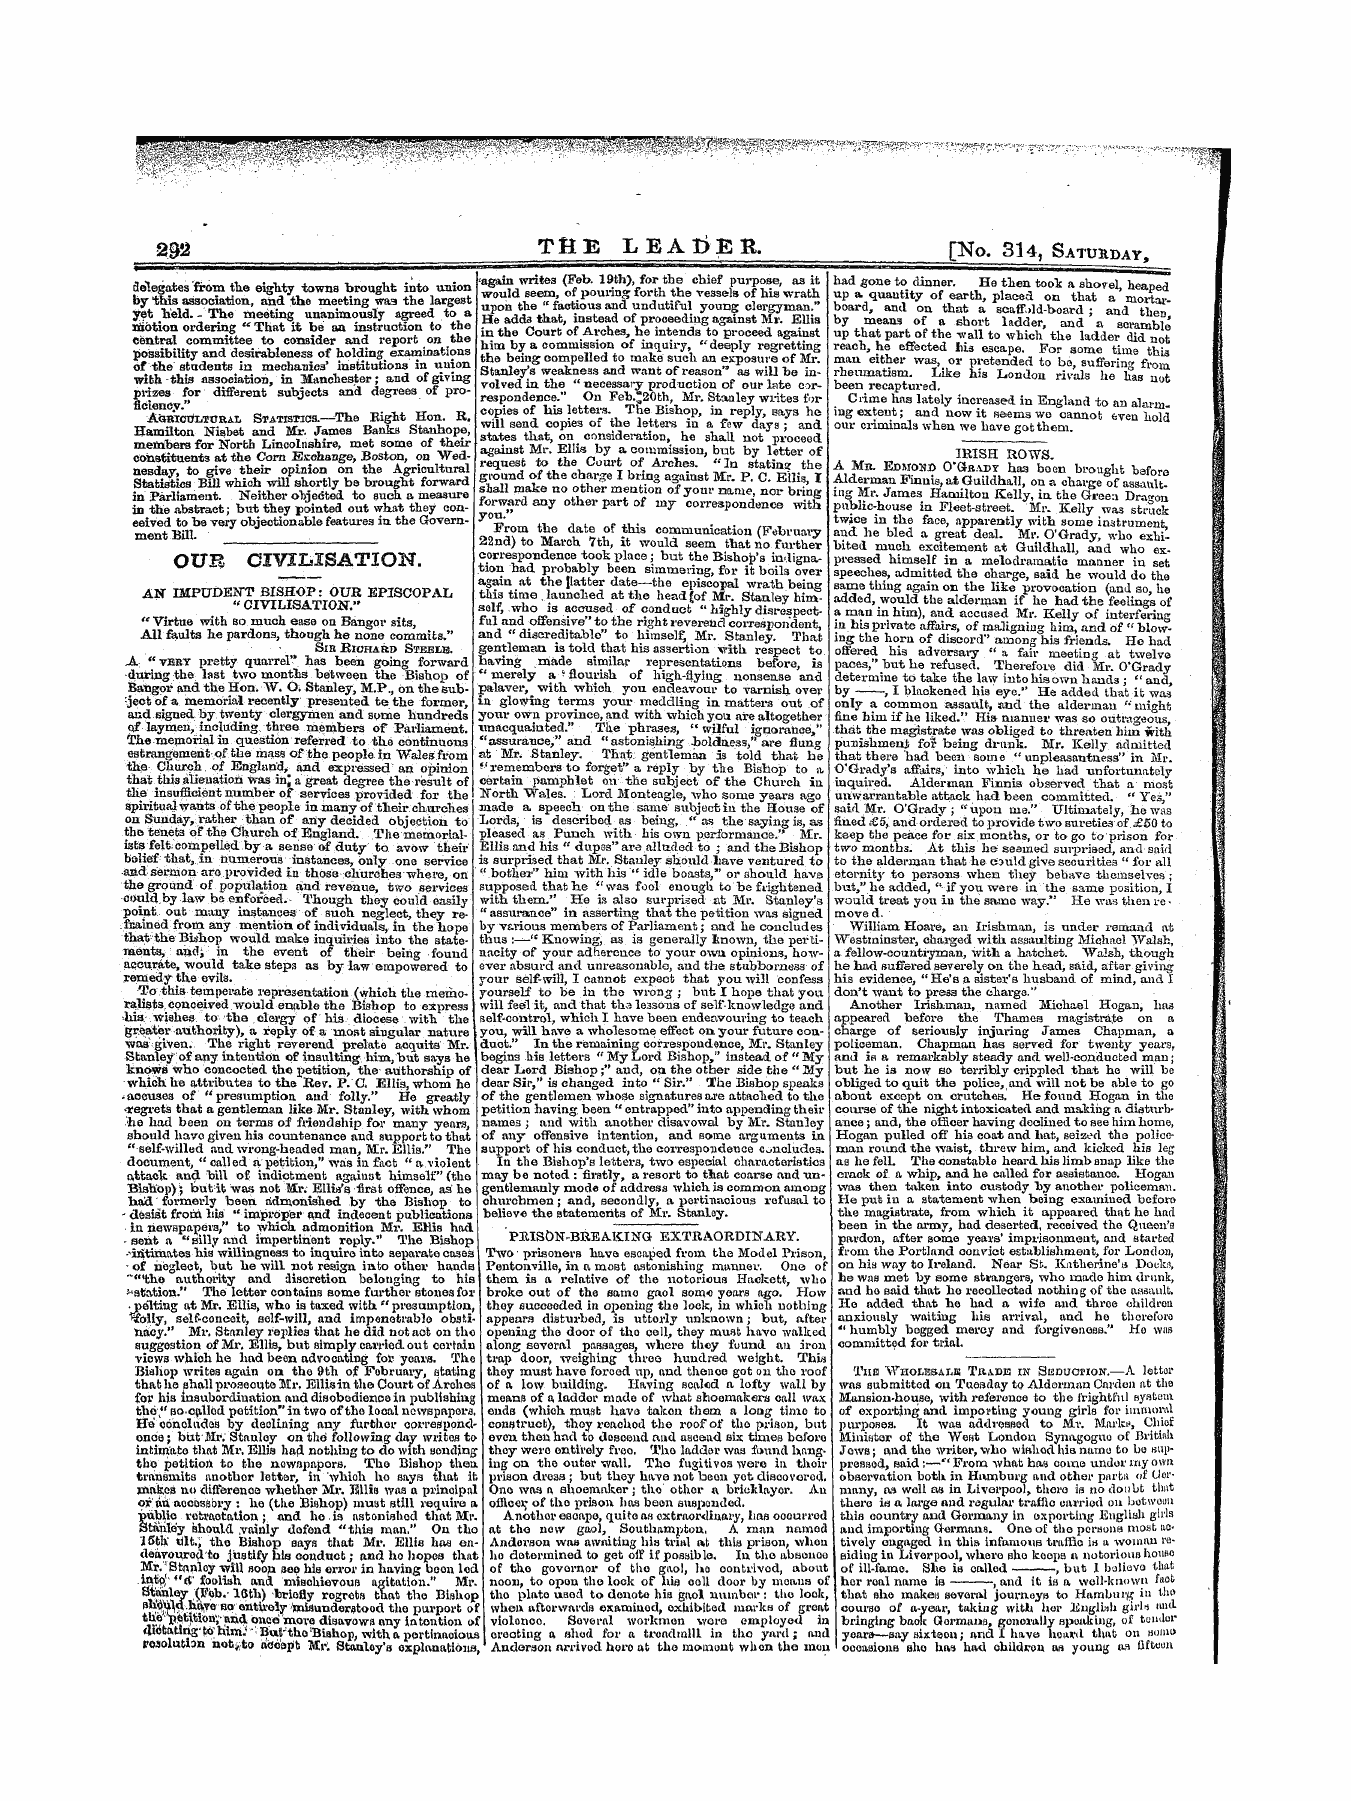 Leader (1850-1860): jS F Y, 1st edition - Ou*L Civilisation V